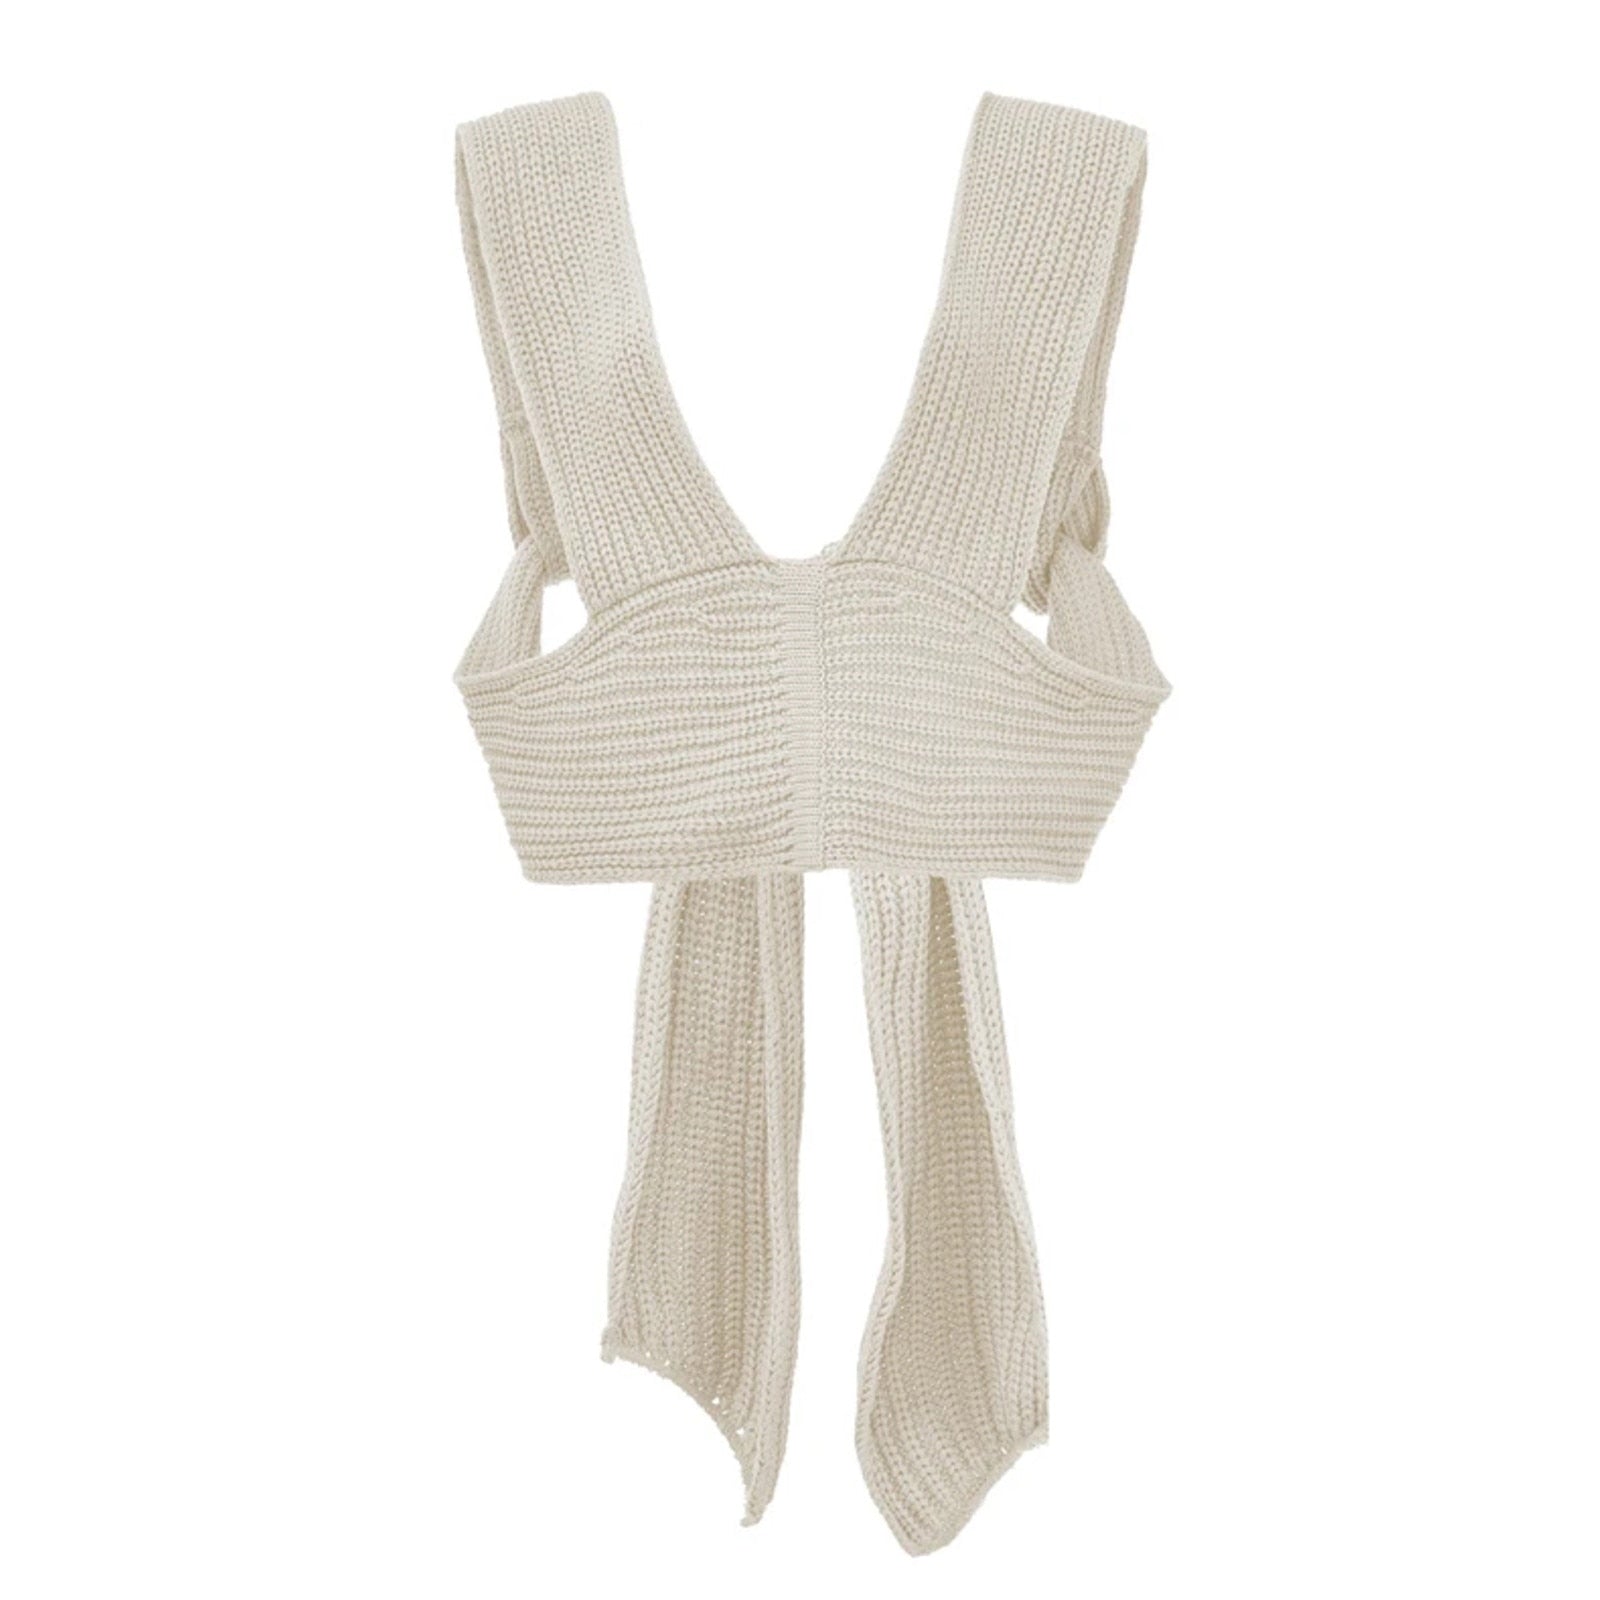 Irregular Knitted Bandage Top Fashion Closet Clothing